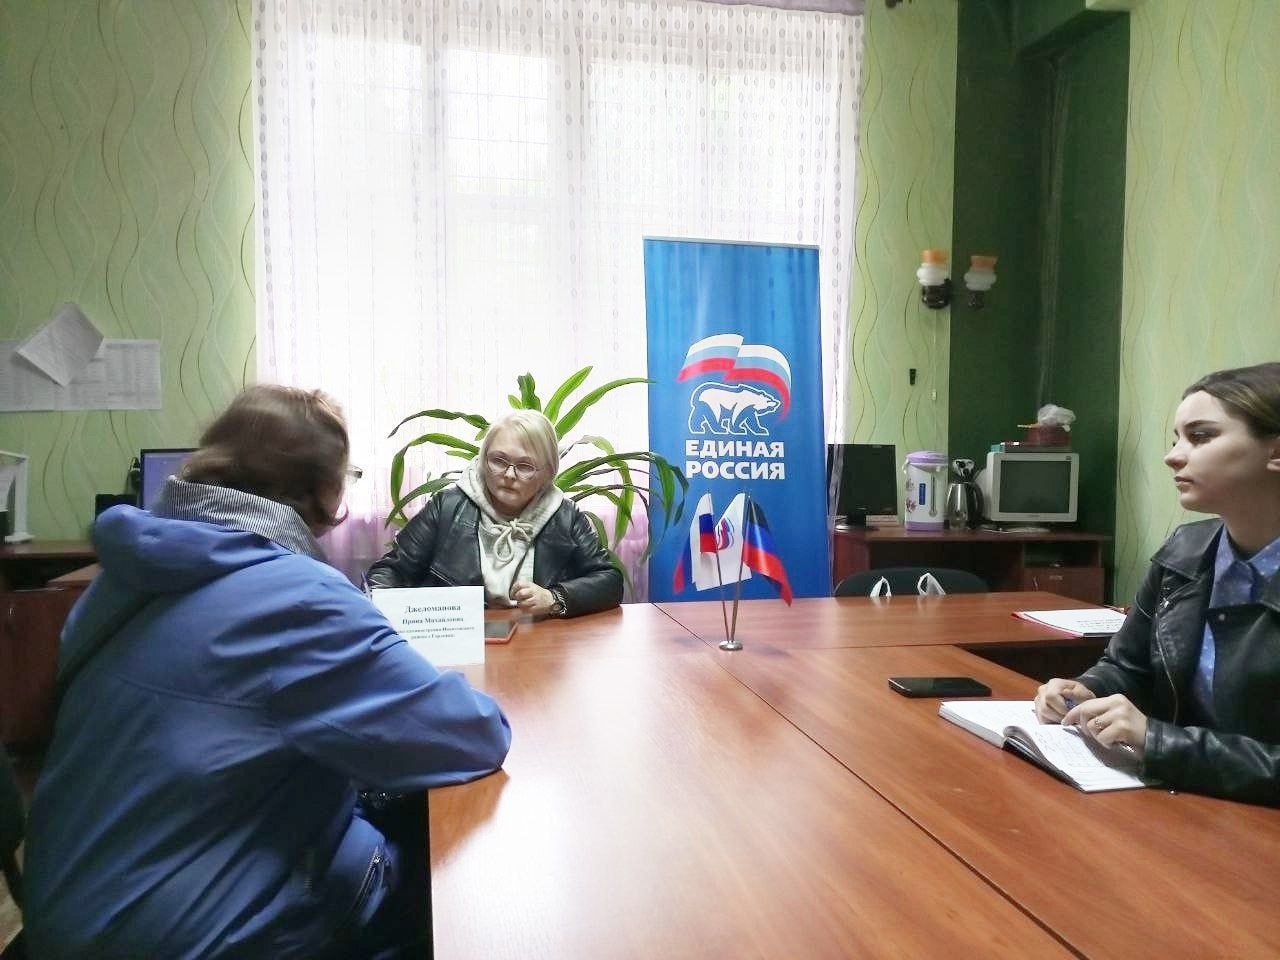 Глава администрации Никитовского района г. Горловка Ирина Джеломанова провела выездной прием граждан.